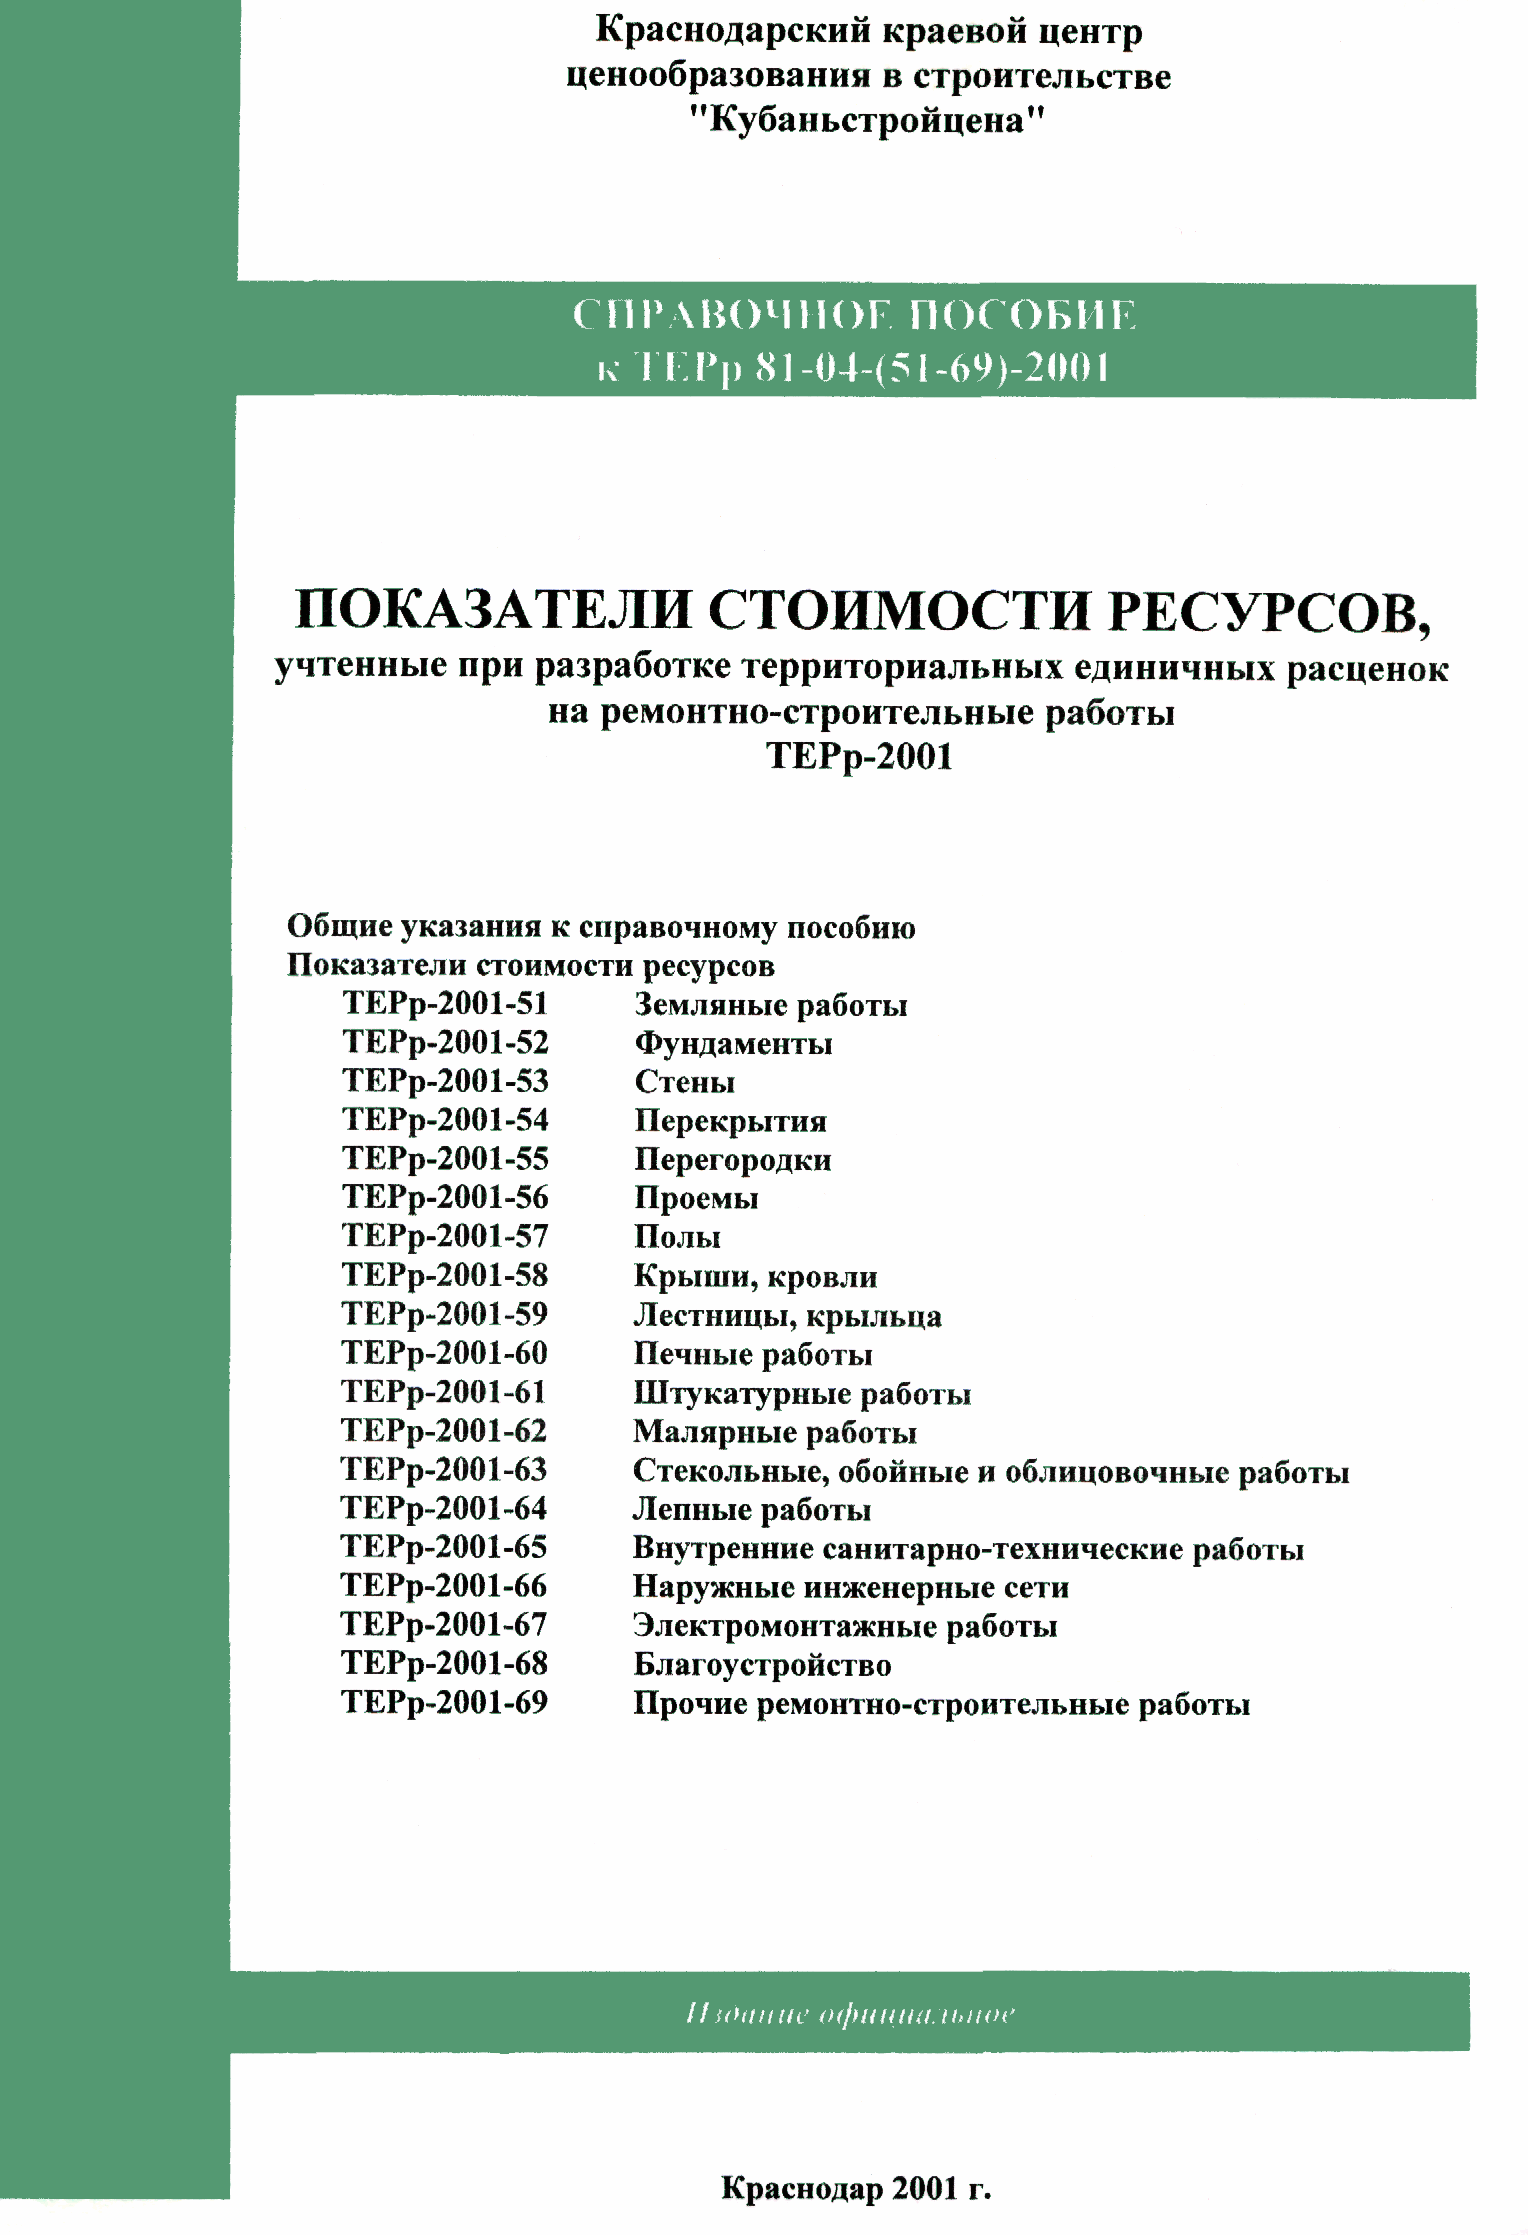 Справочное пособие к ТЕРр 81-04-65-2001